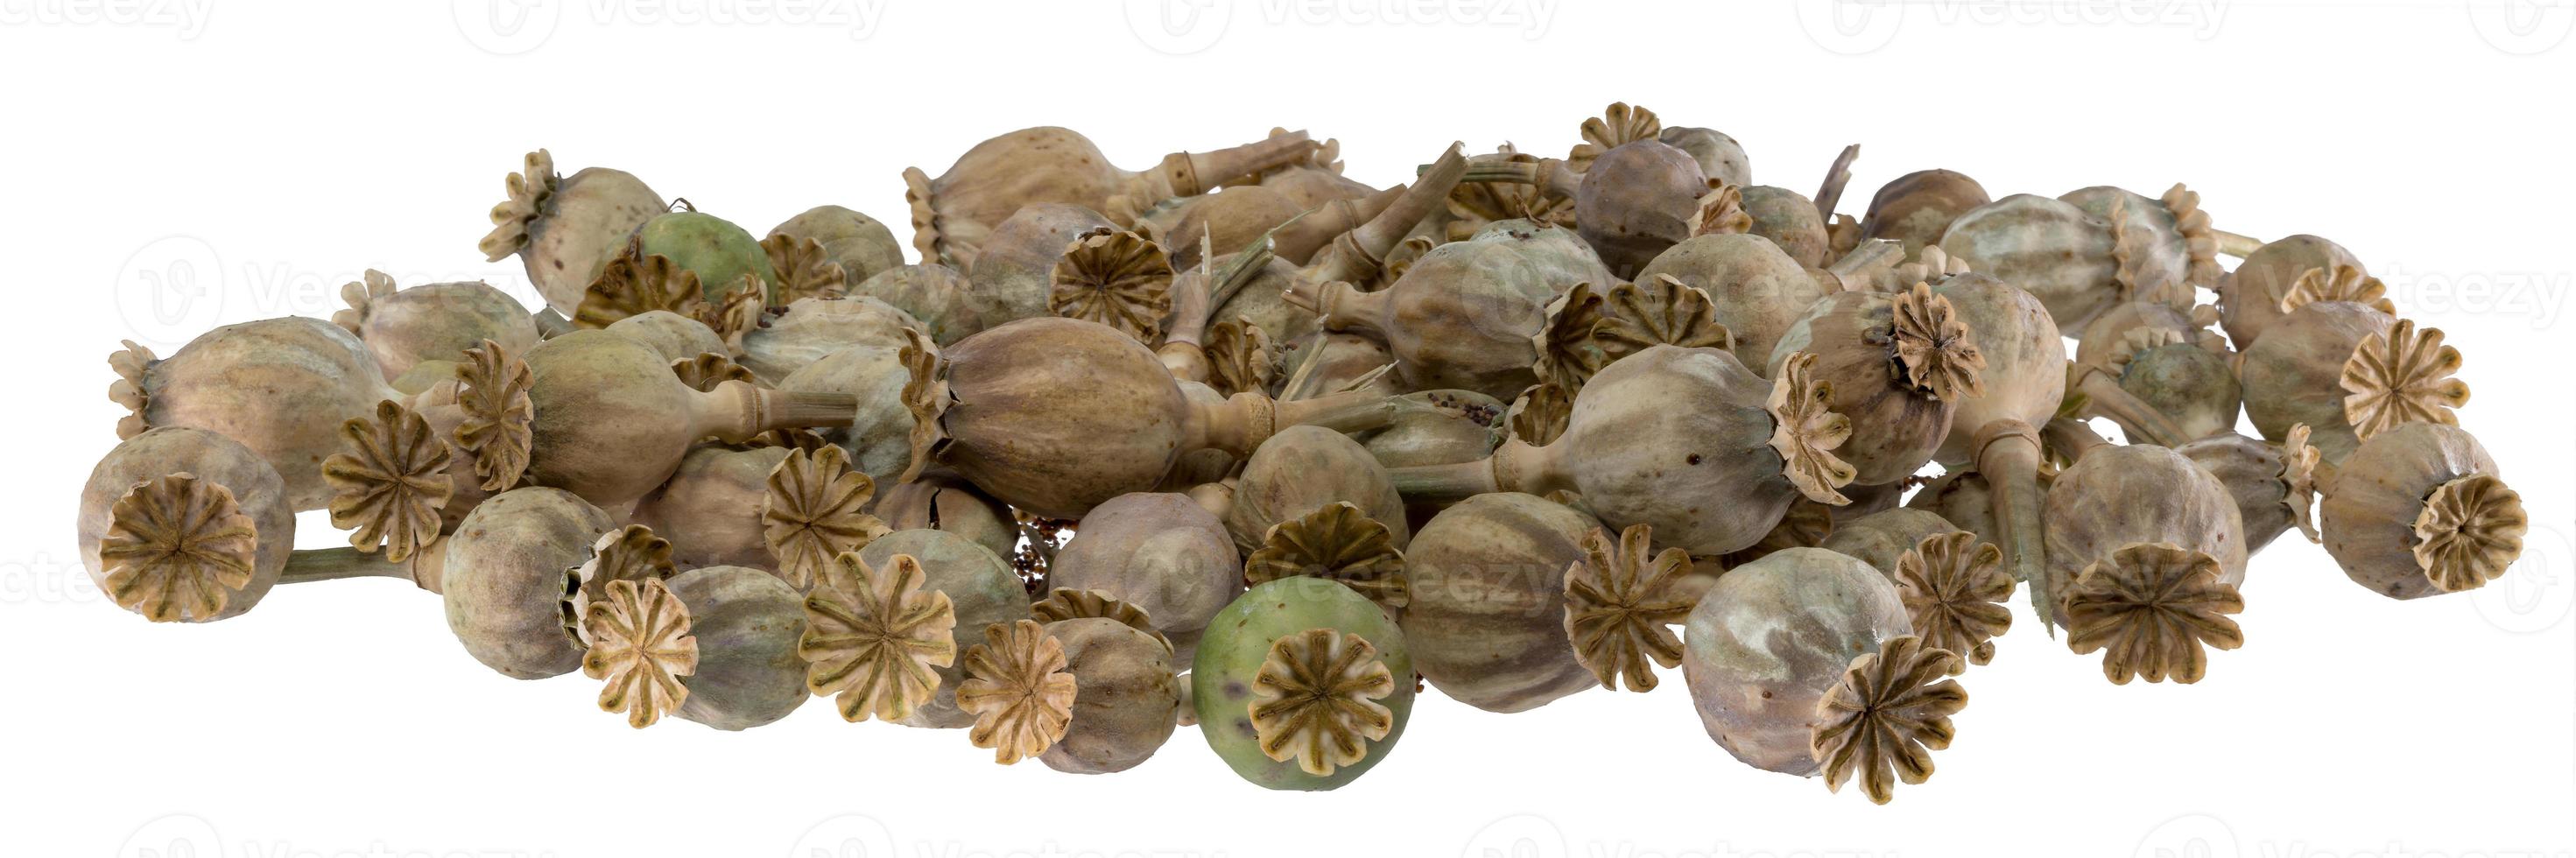 vagens de sementes de papoula secas e maduras empilhadas como pano de fundo foto